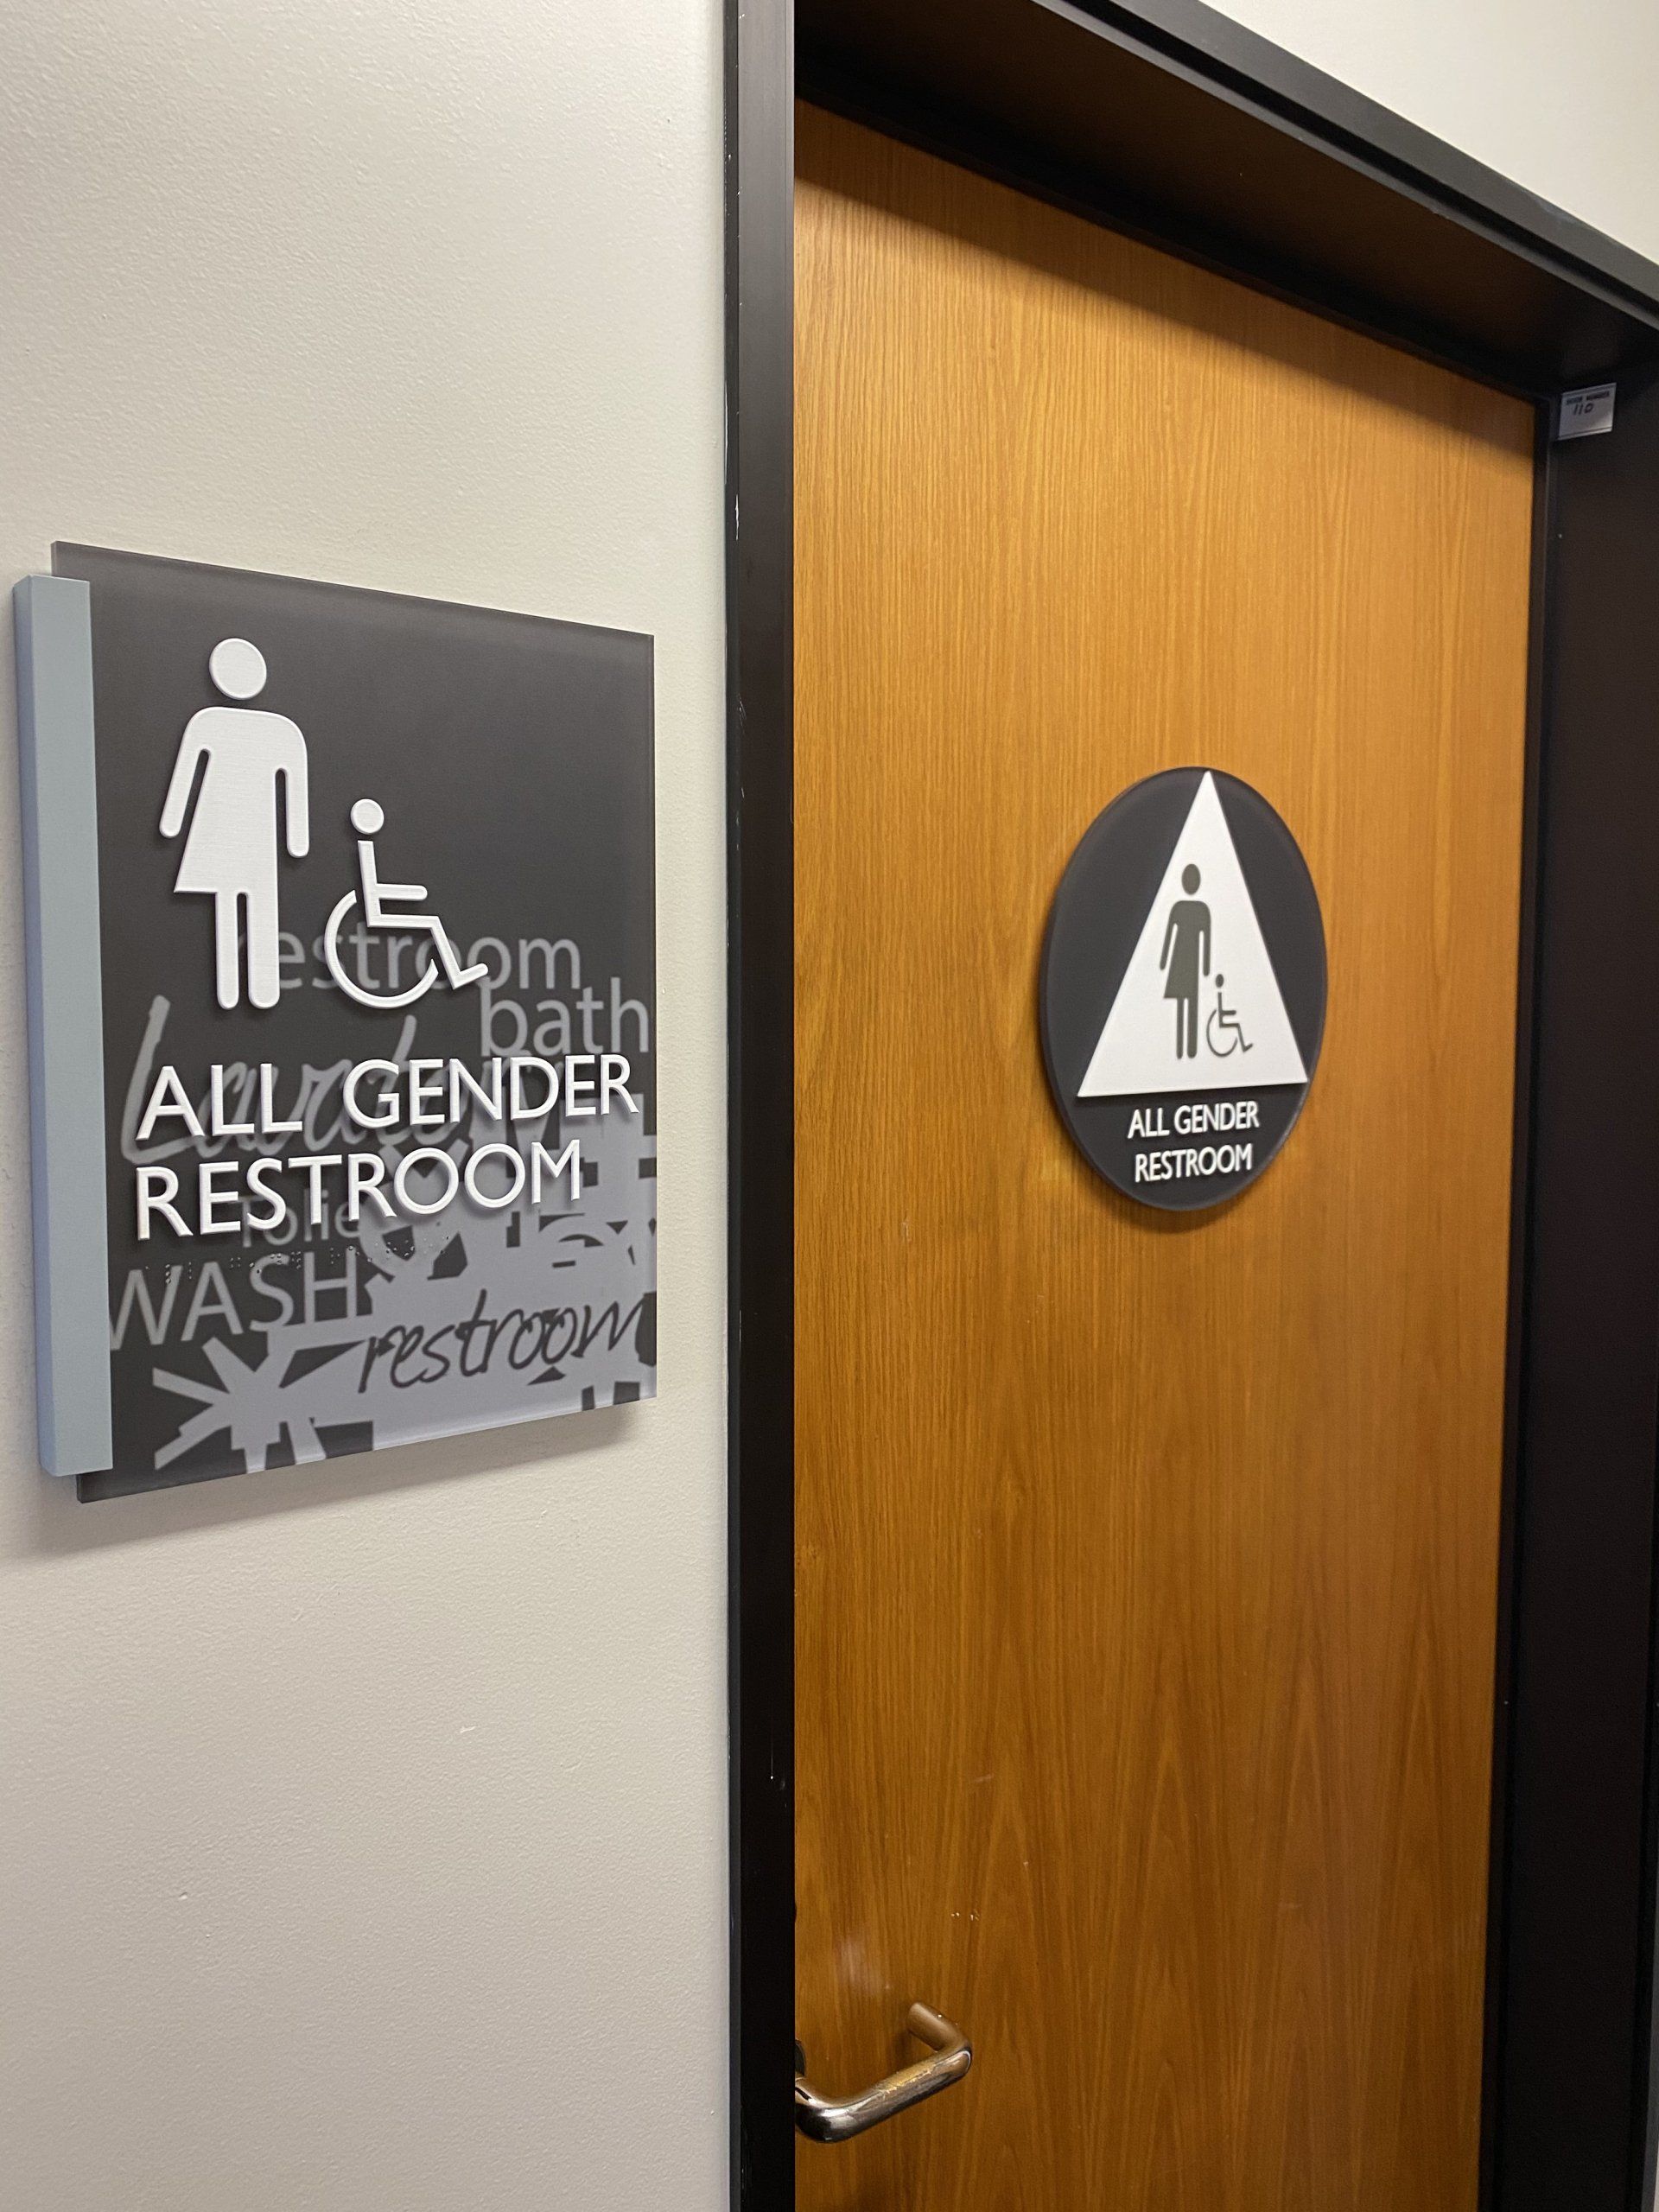 ADA compliant Women's Restroom signs